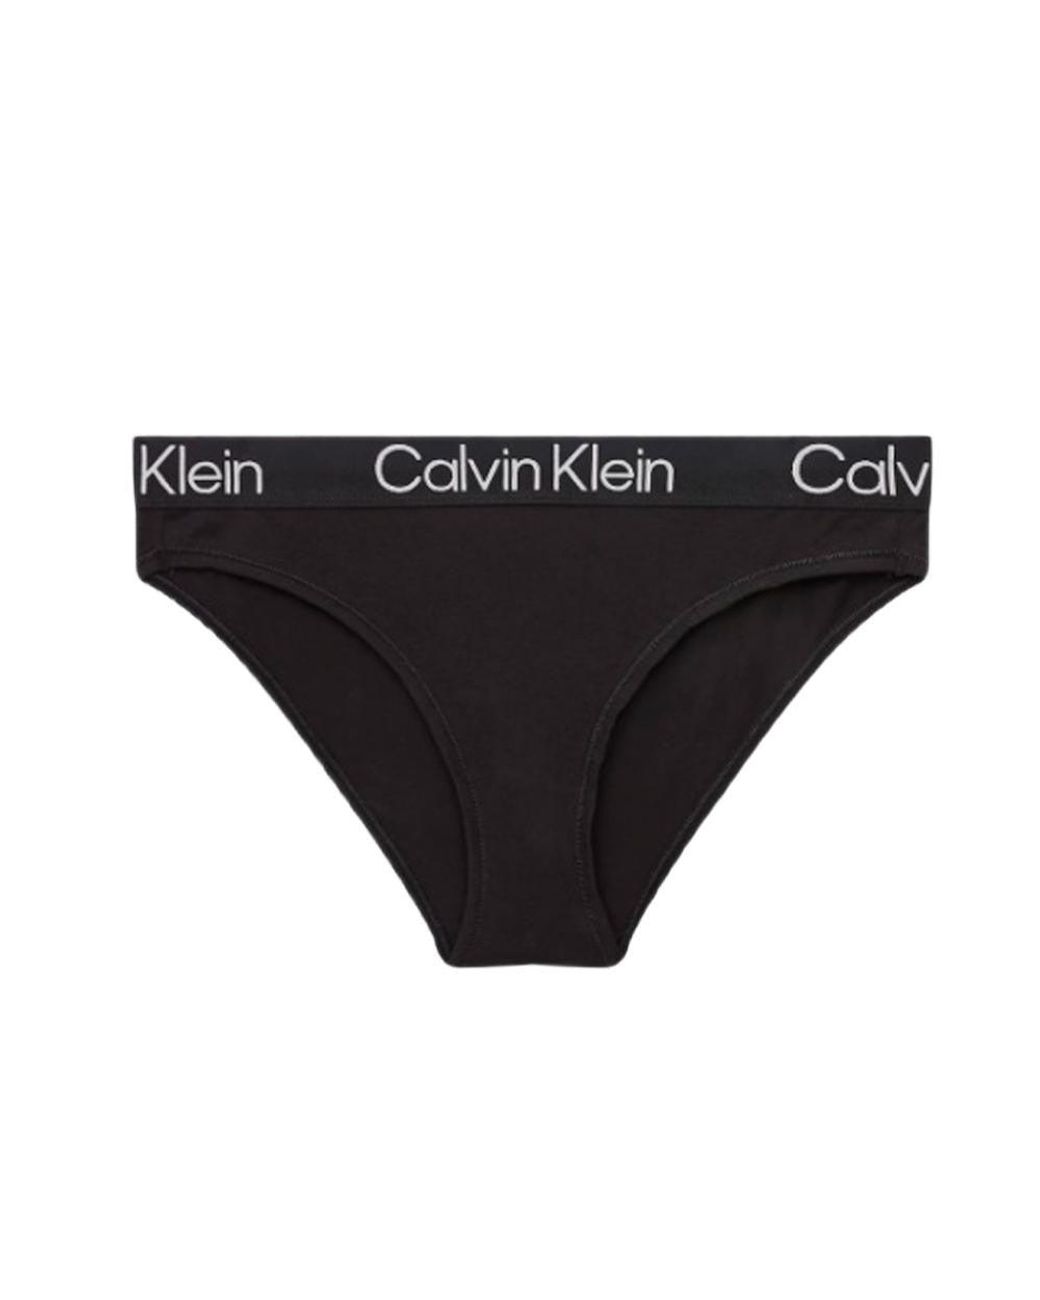 Calvin Klein Cotton Calvin Klein Underwear in Black | Lyst